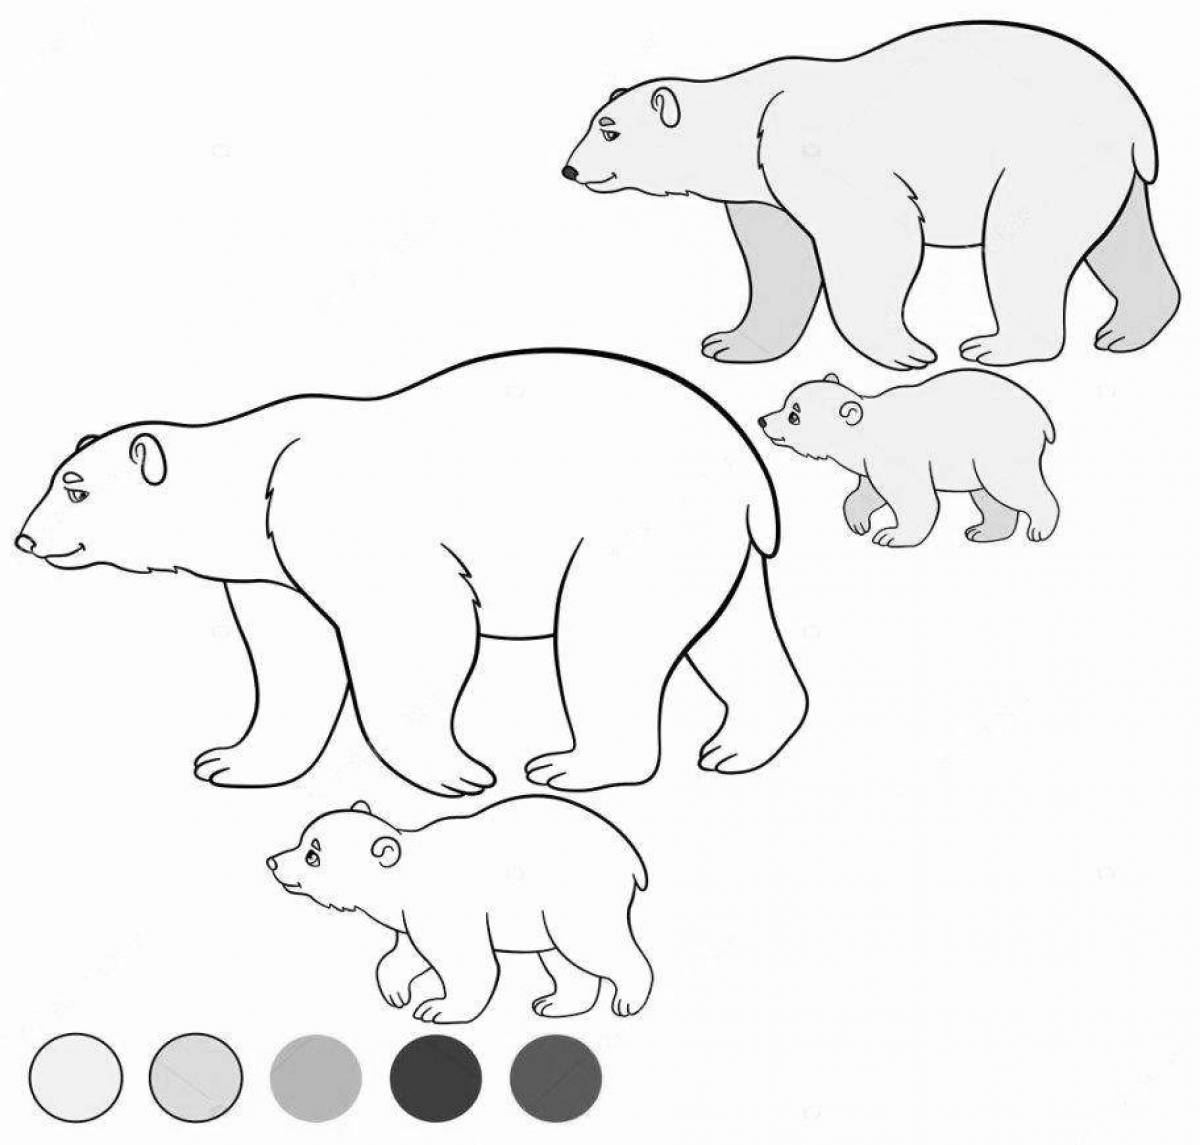 Colorful polar bear coloring book